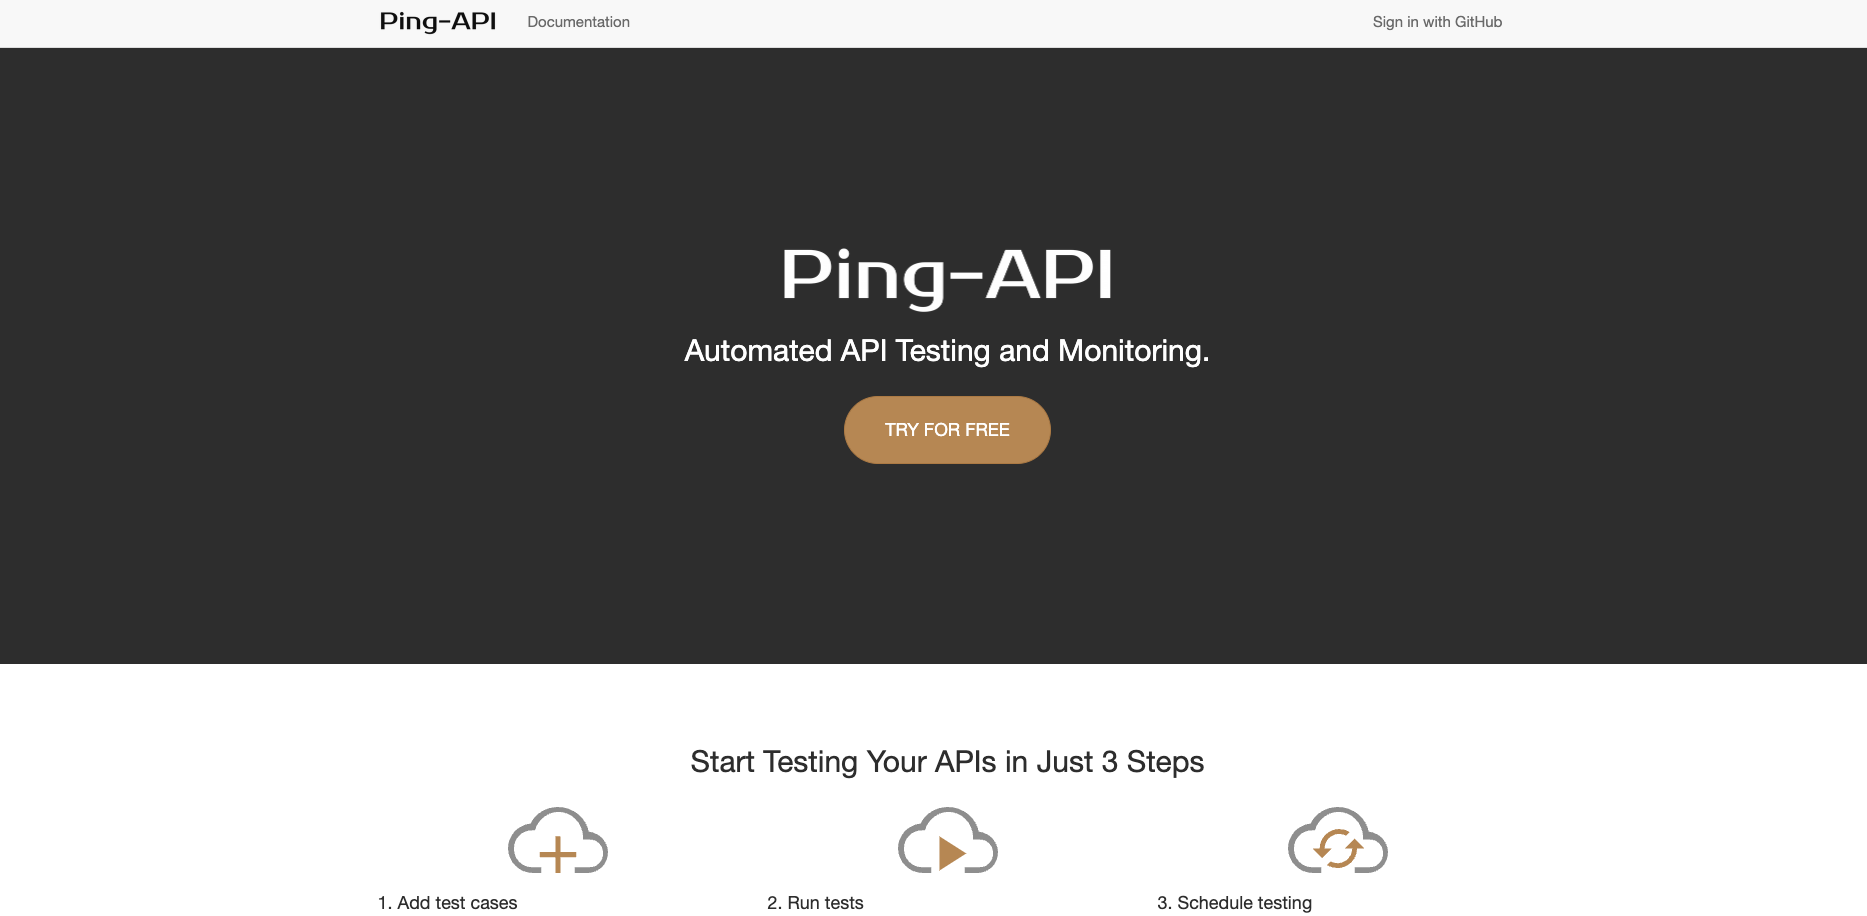 Ping-API Image